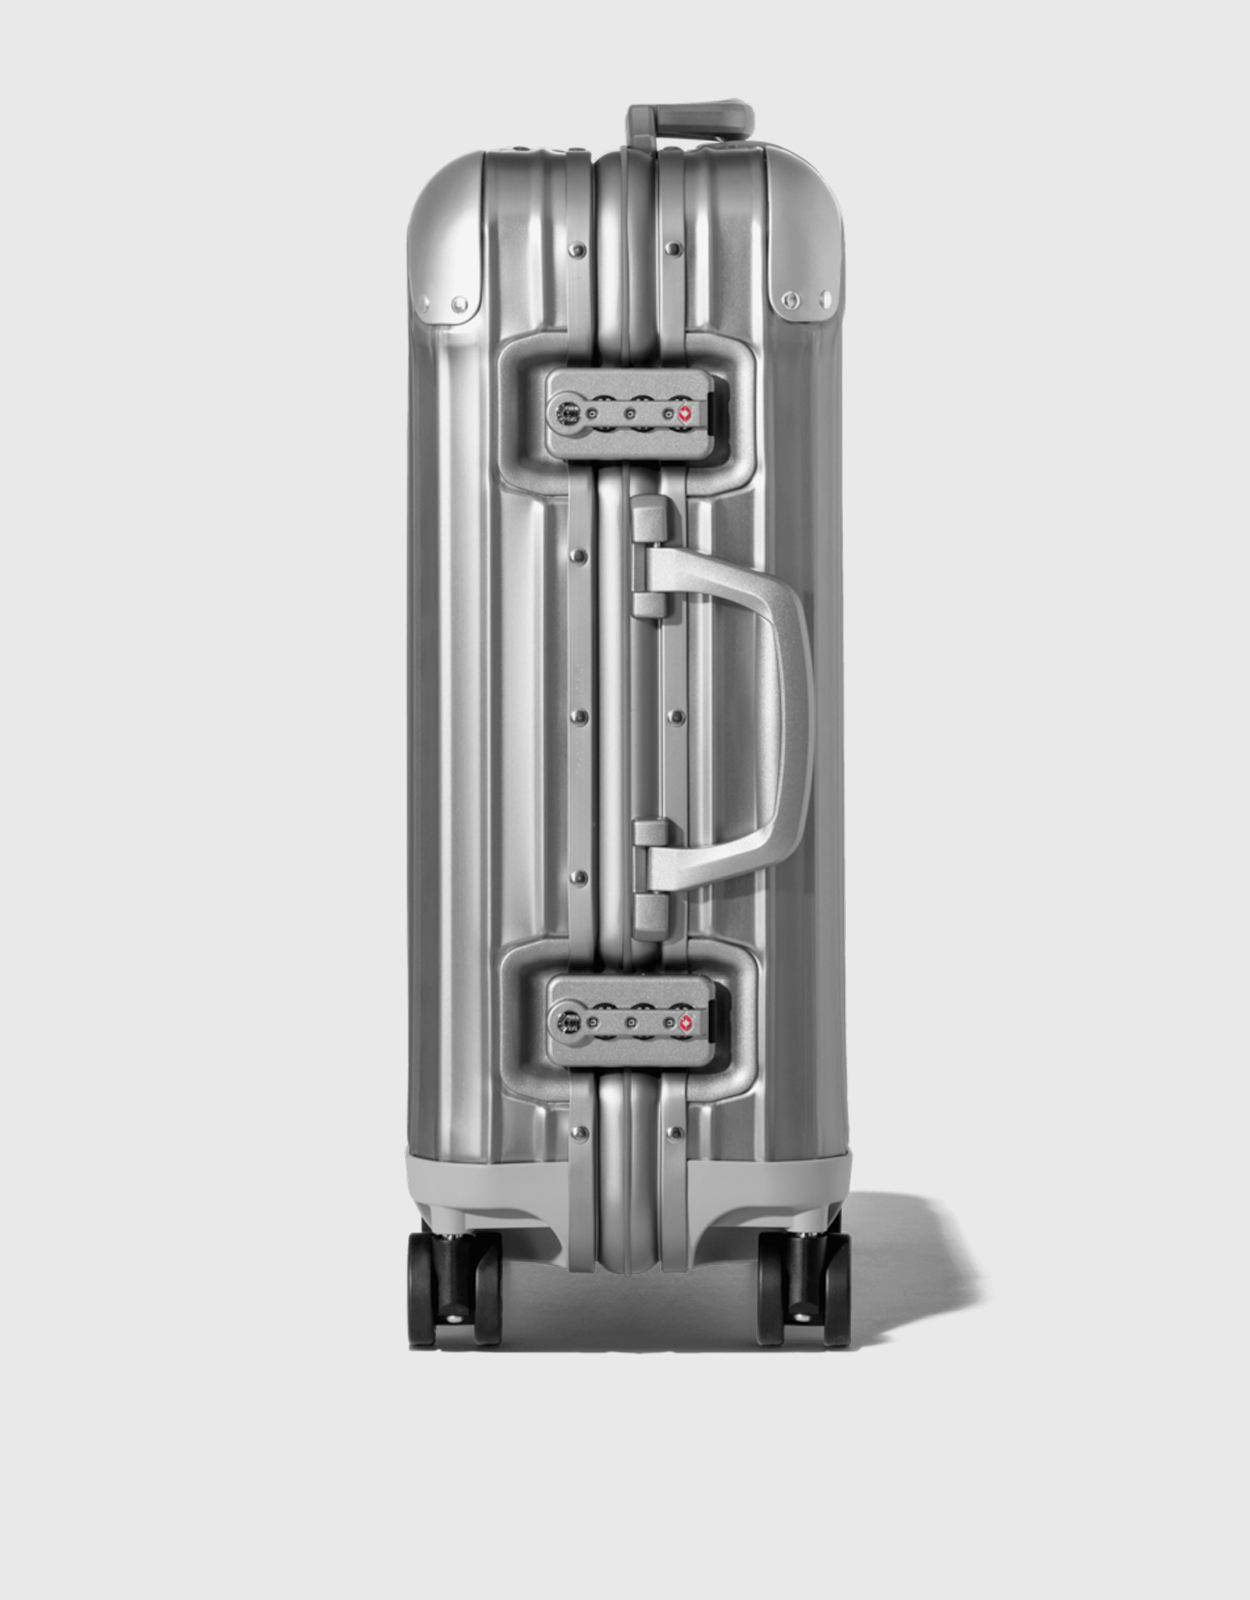 Original Cabin Aluminum Carry-On Suitcase, Titanium, RIMOWA